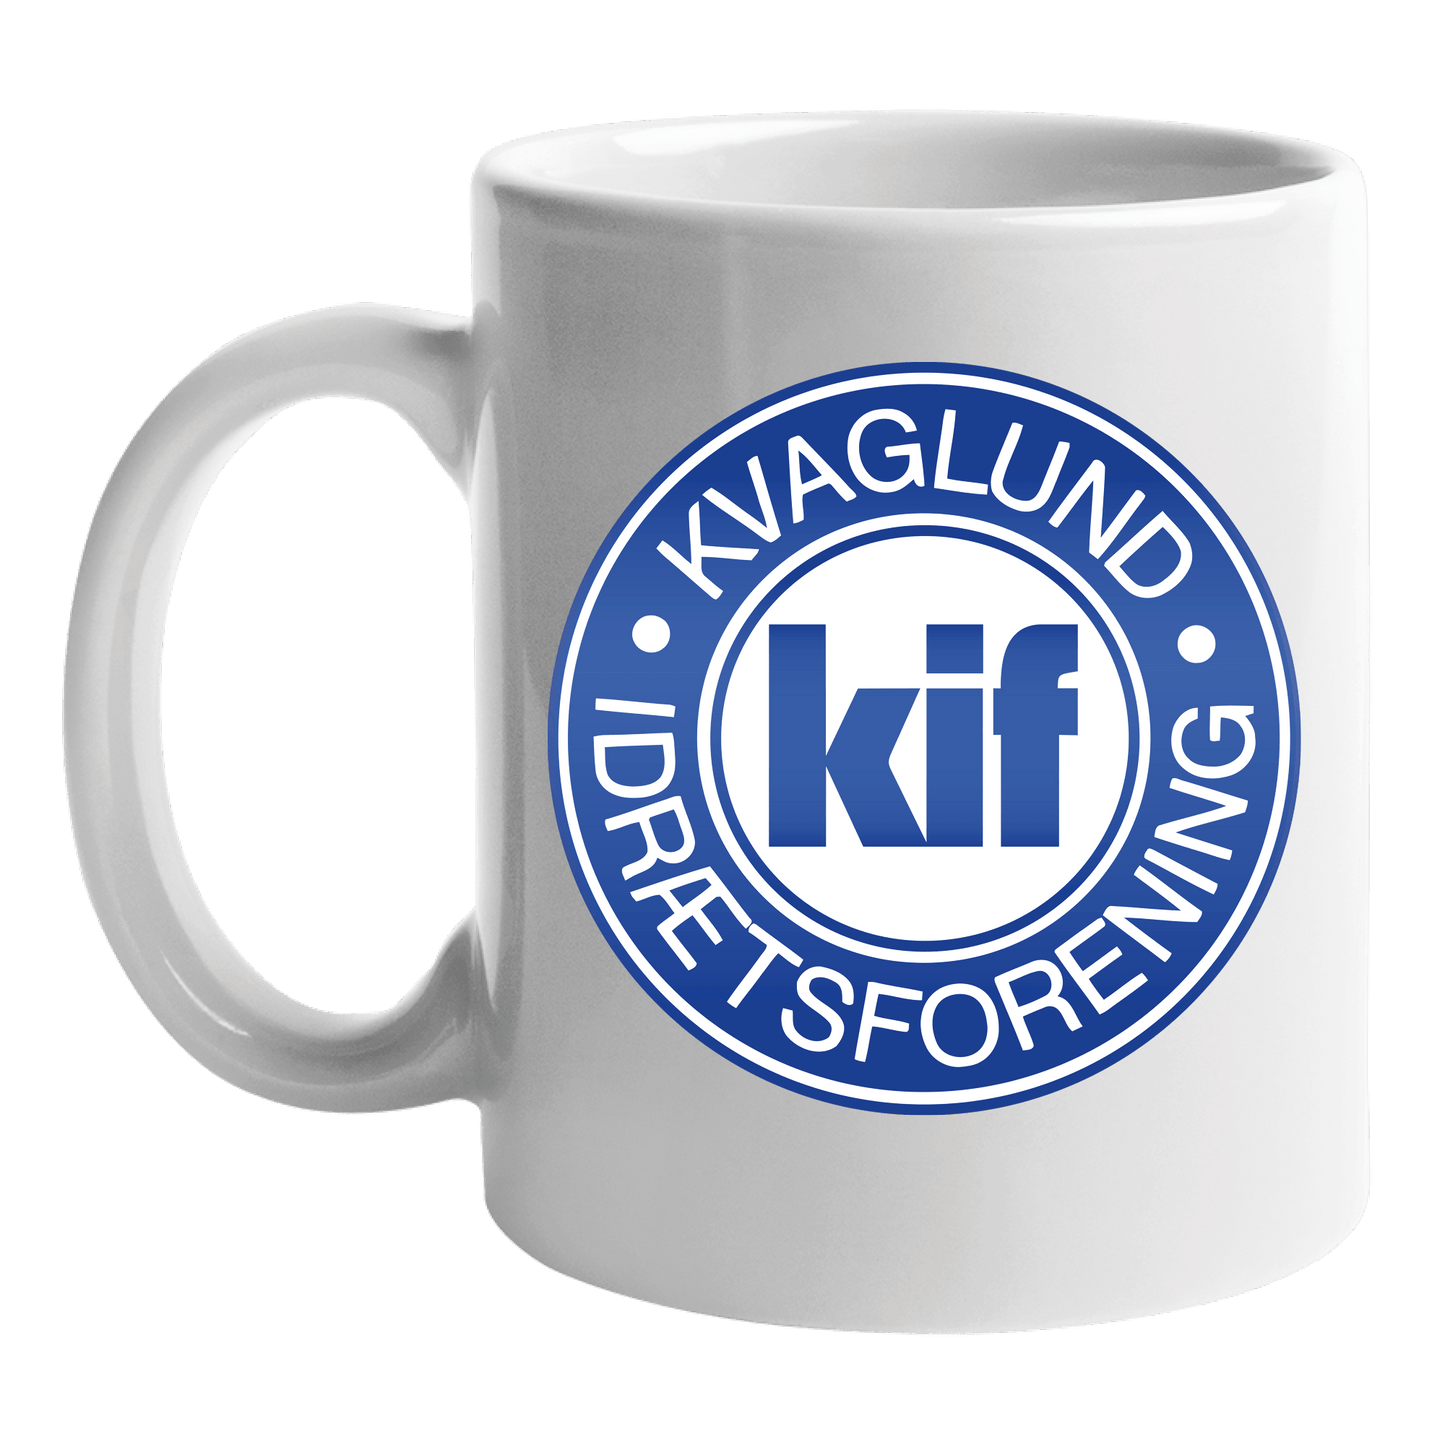 Kop med klub logo - Kvaglund IF